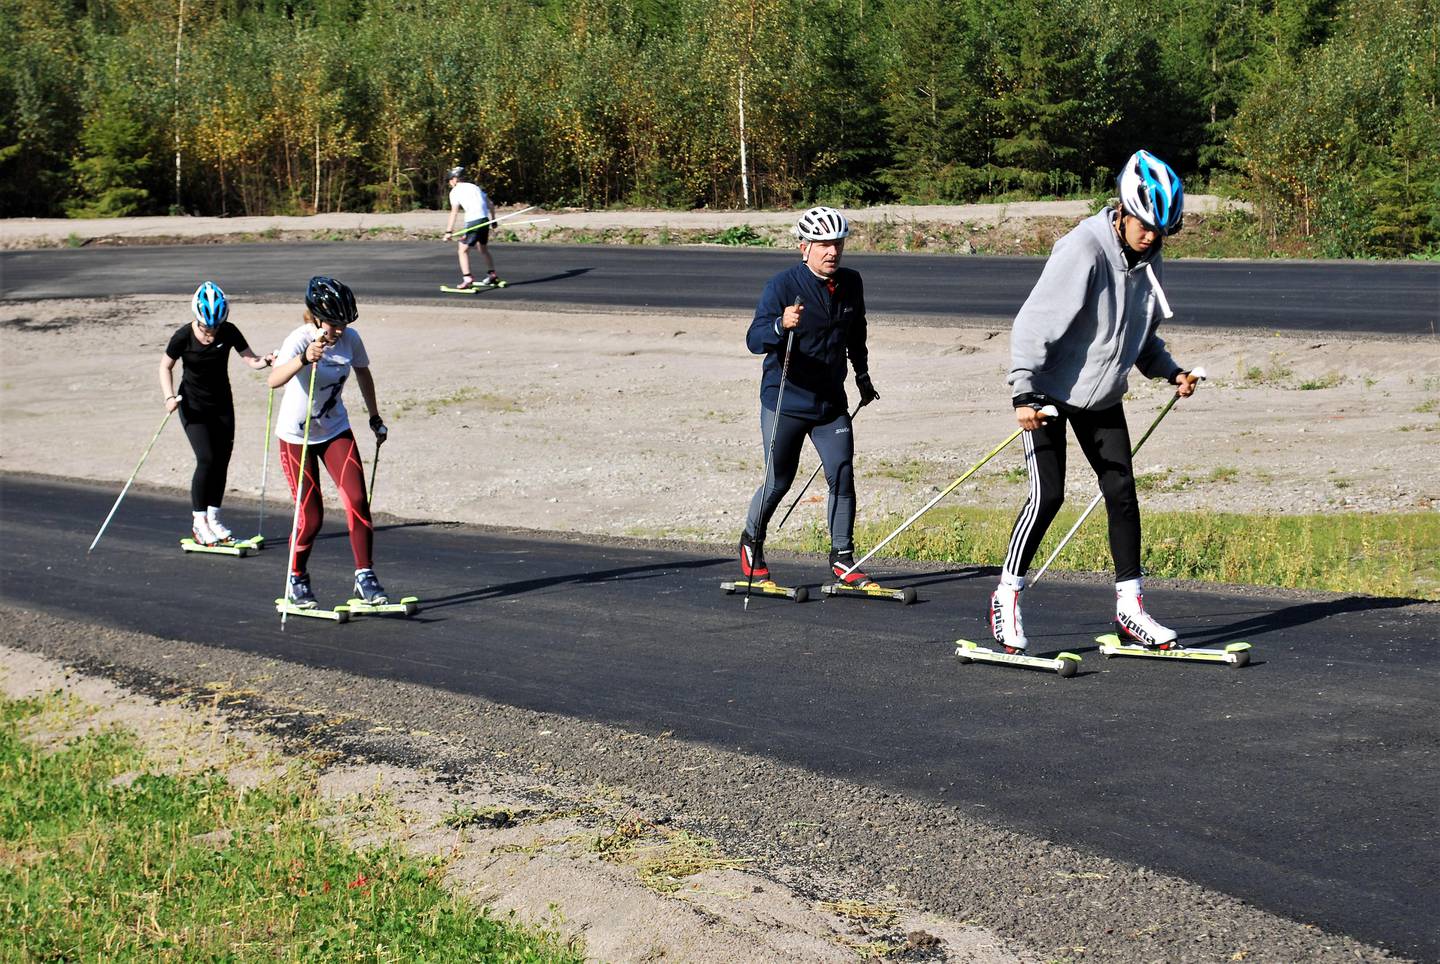 ENTUSIAST: Lærer Trond Singdahlsen (nr. 2 fra høyre) er selv en ivrig mosjonist på rulleski, og gleder seg over at elevene får prøve seg på den nylagte asfalten.